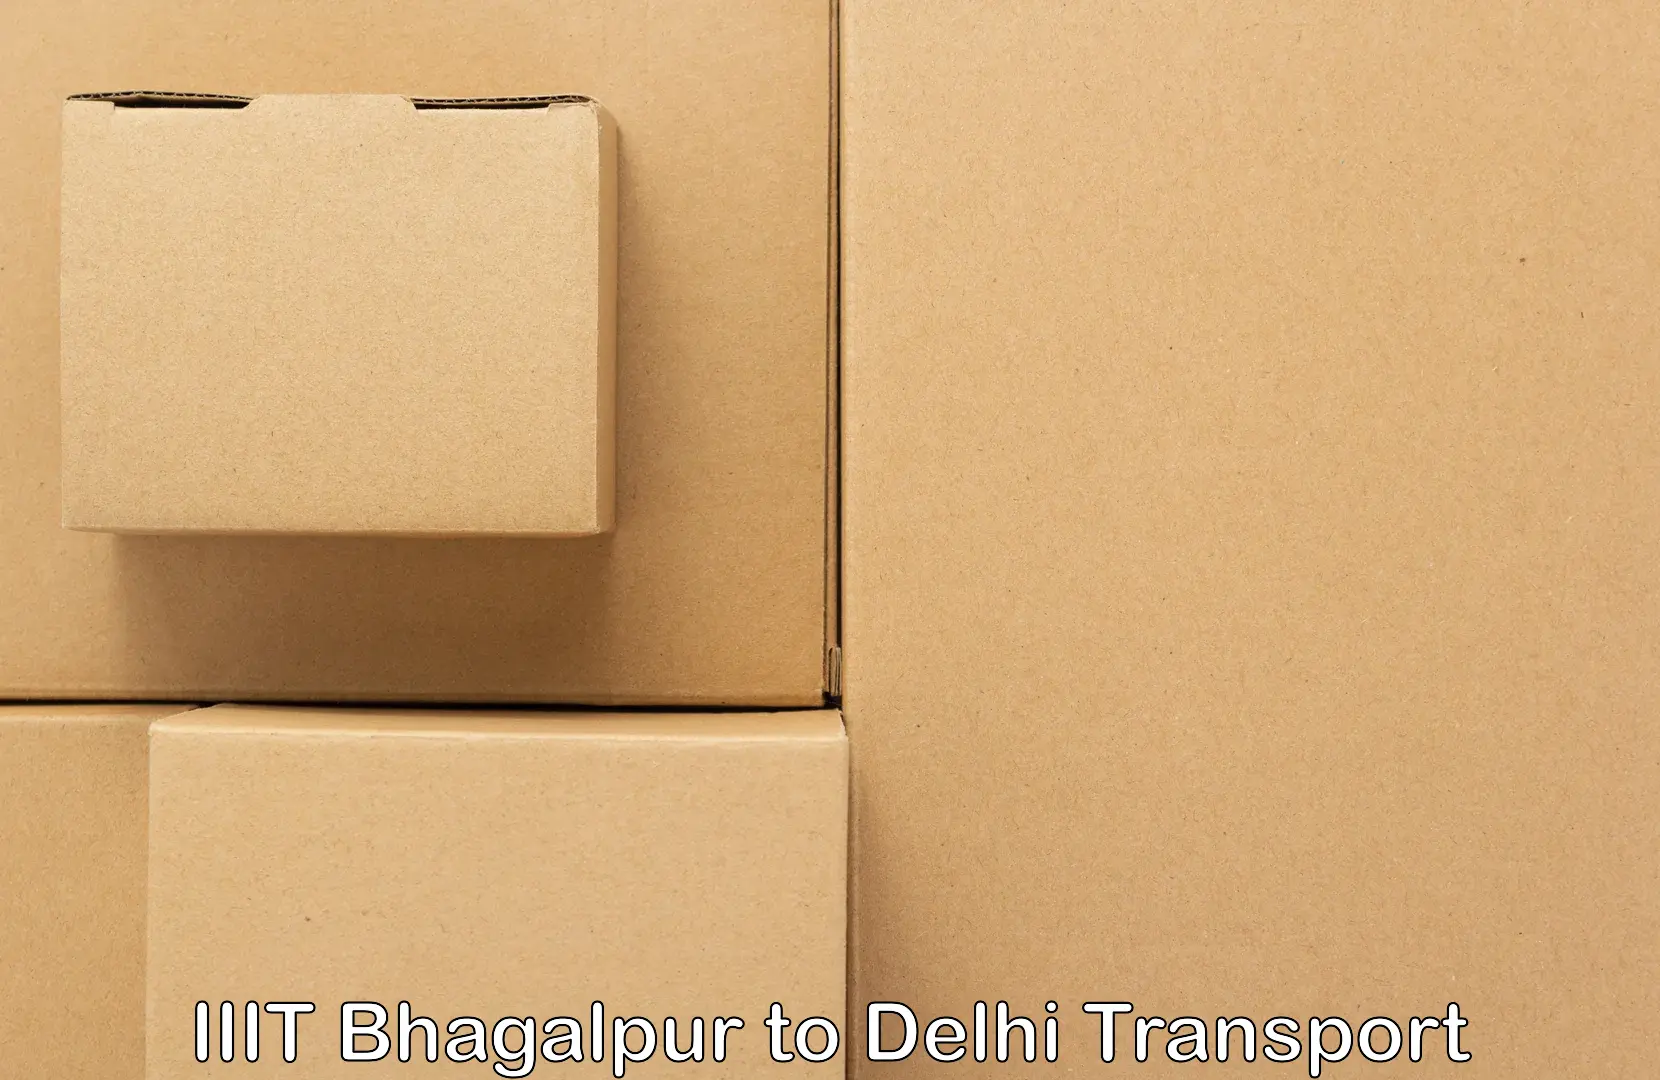 Vehicle transport services in IIIT Bhagalpur to Delhi